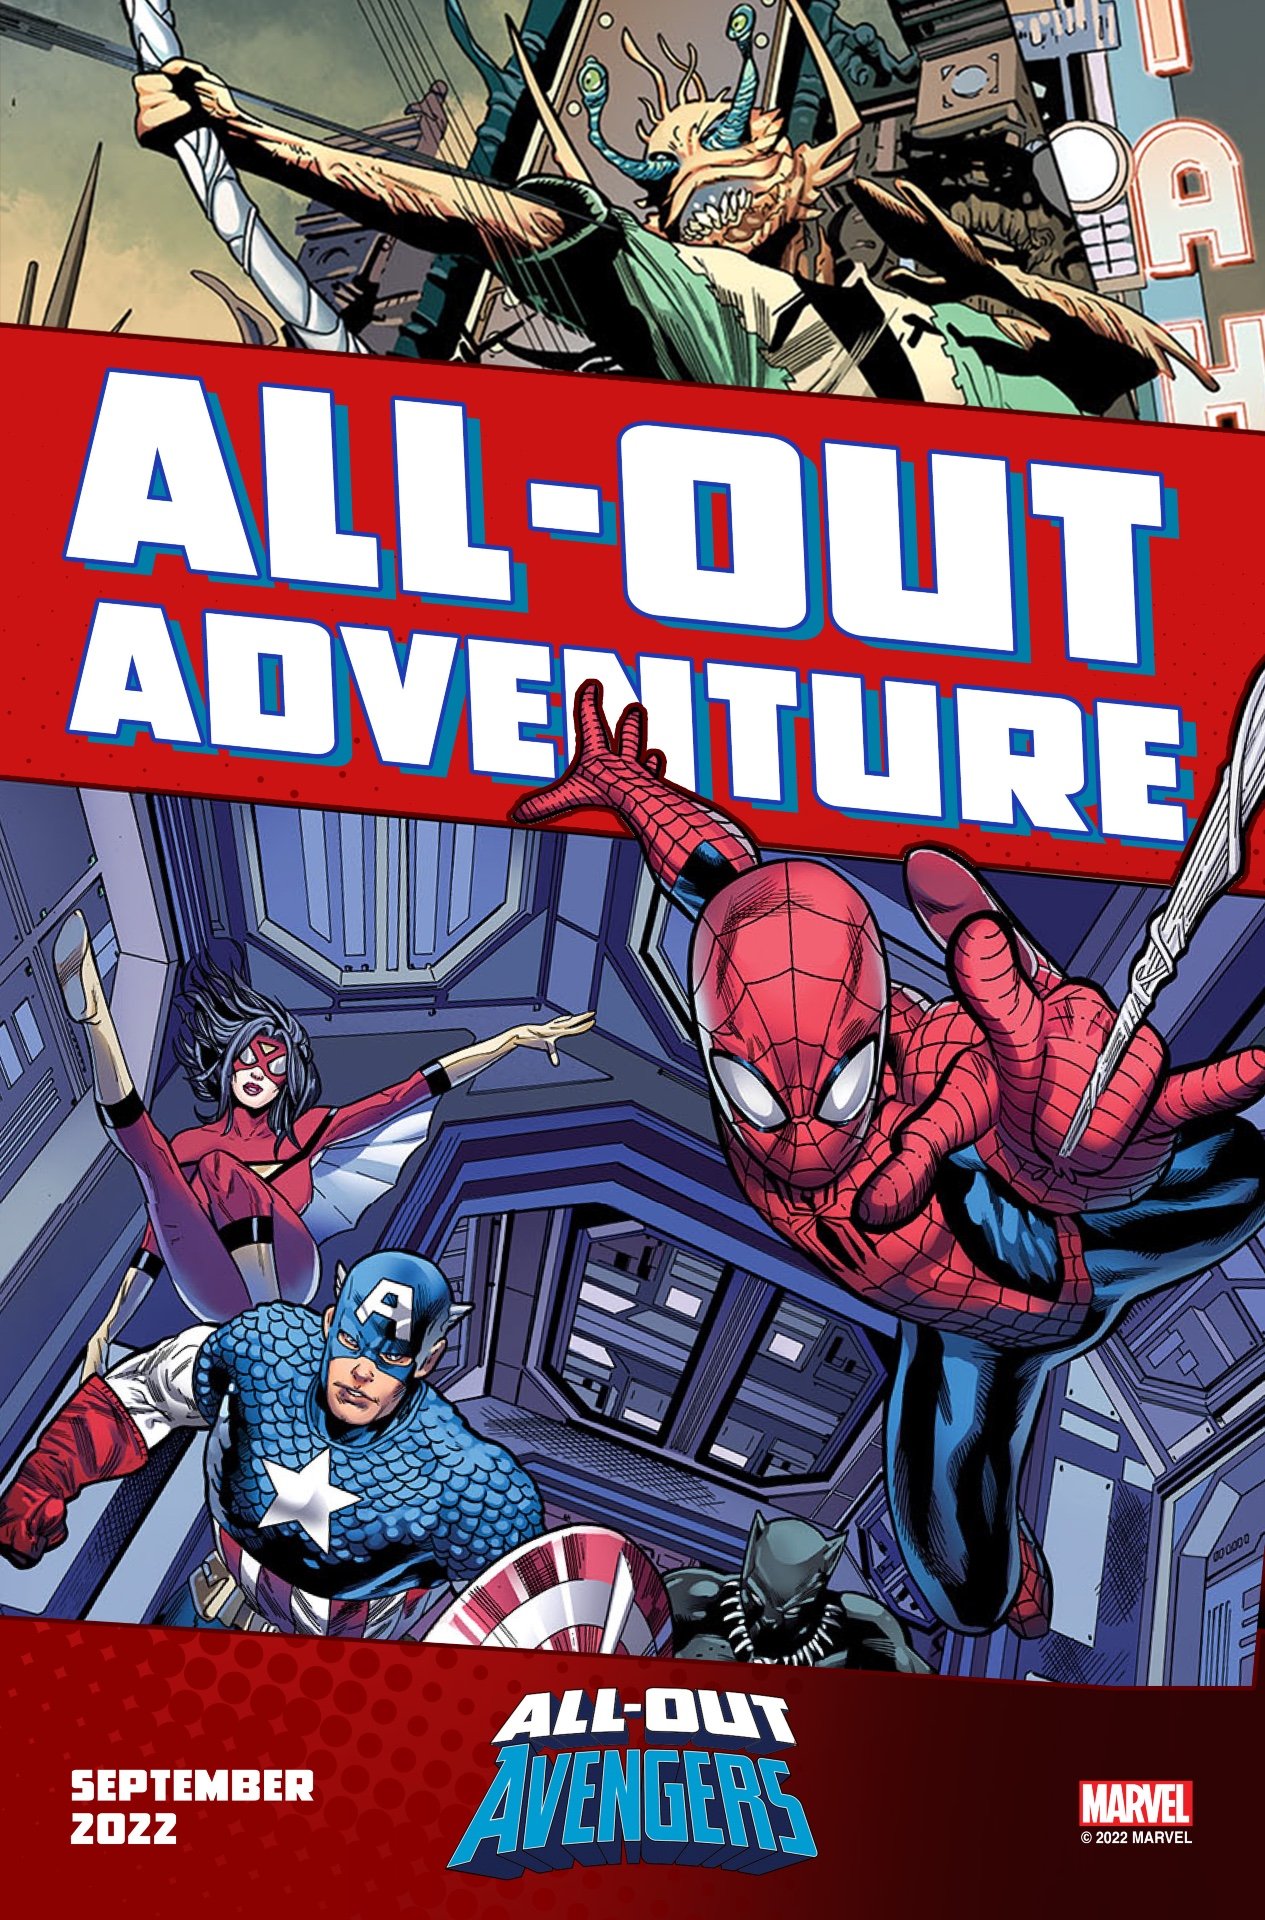 Immagine promozionale di All-Out Avengers di Greg Land